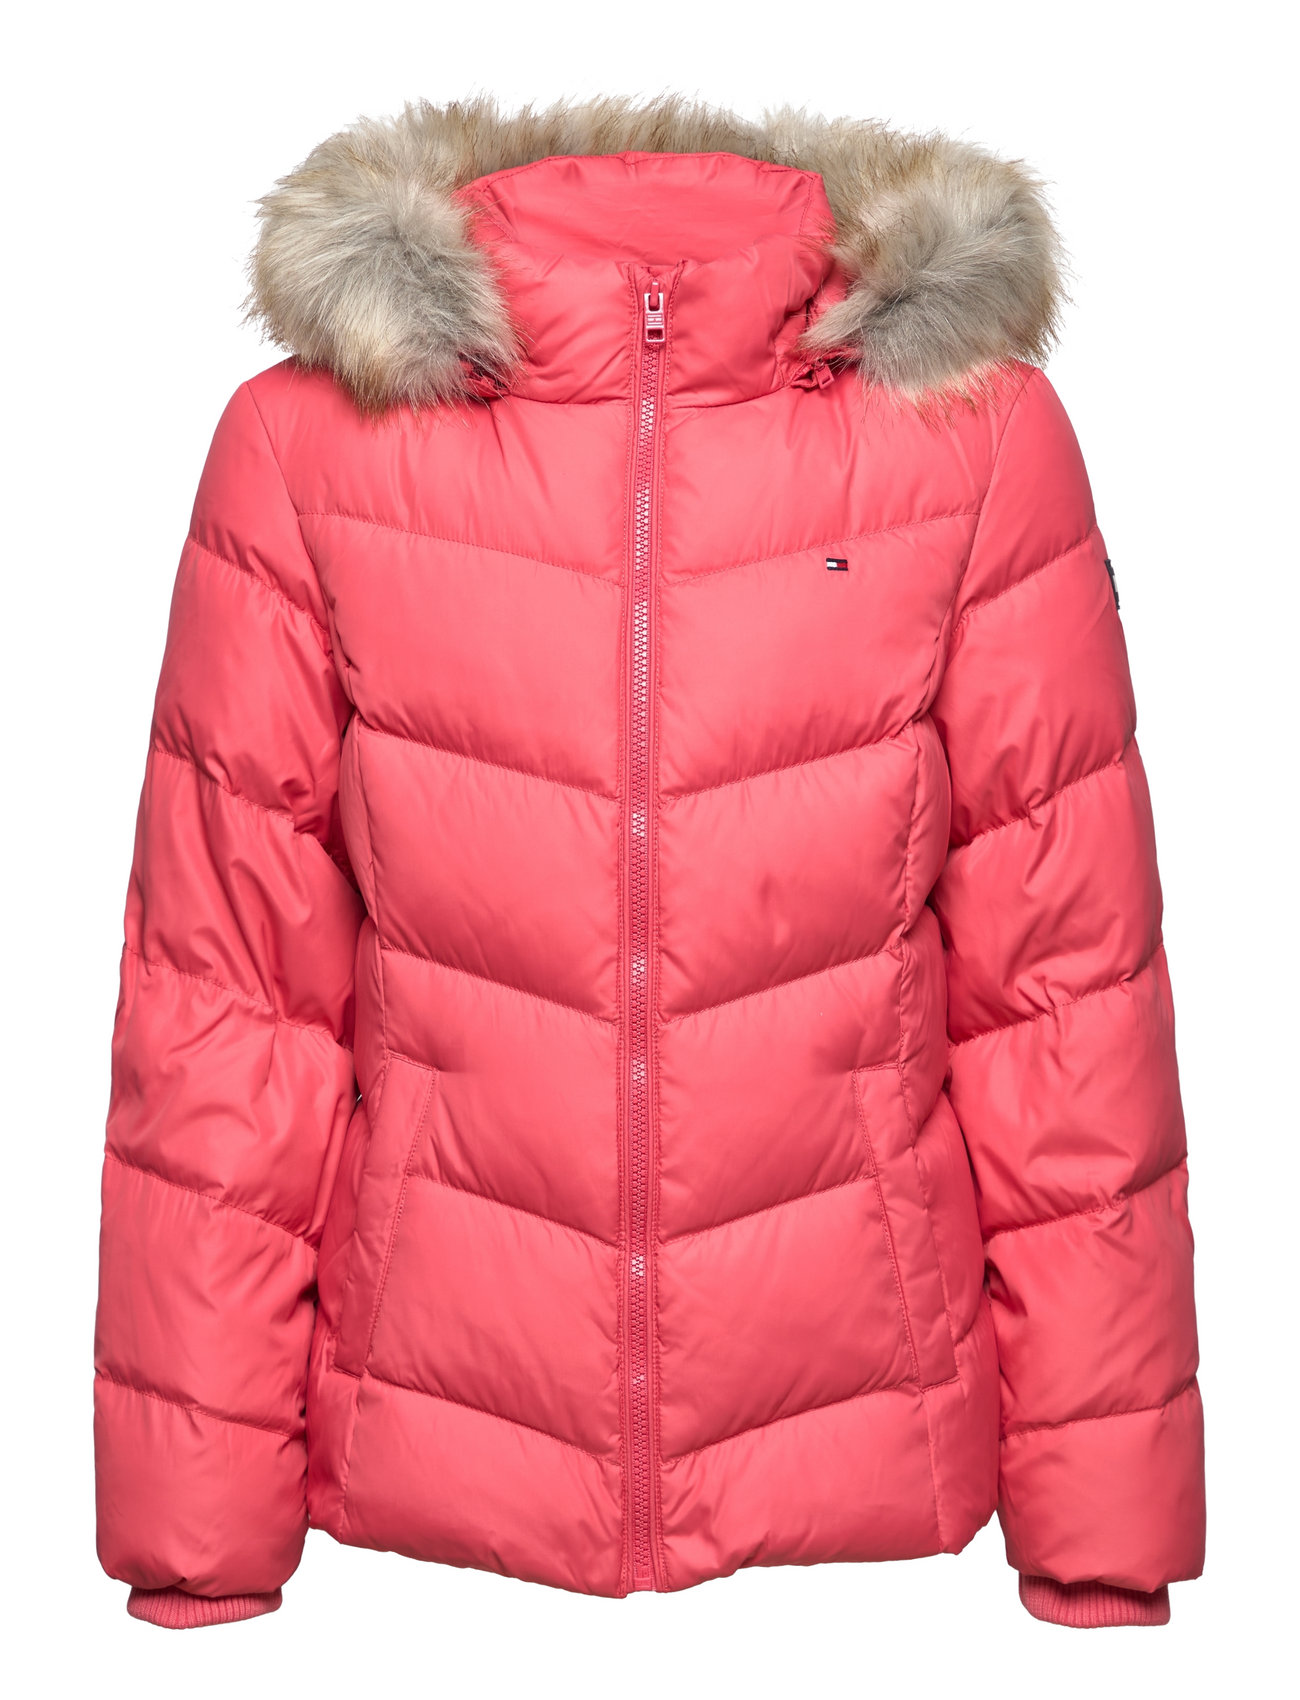 Hilfiger Essential Down Jacket (Empire Pink), 674.55 kr | udvalg af designer mærker | Booztlet.com